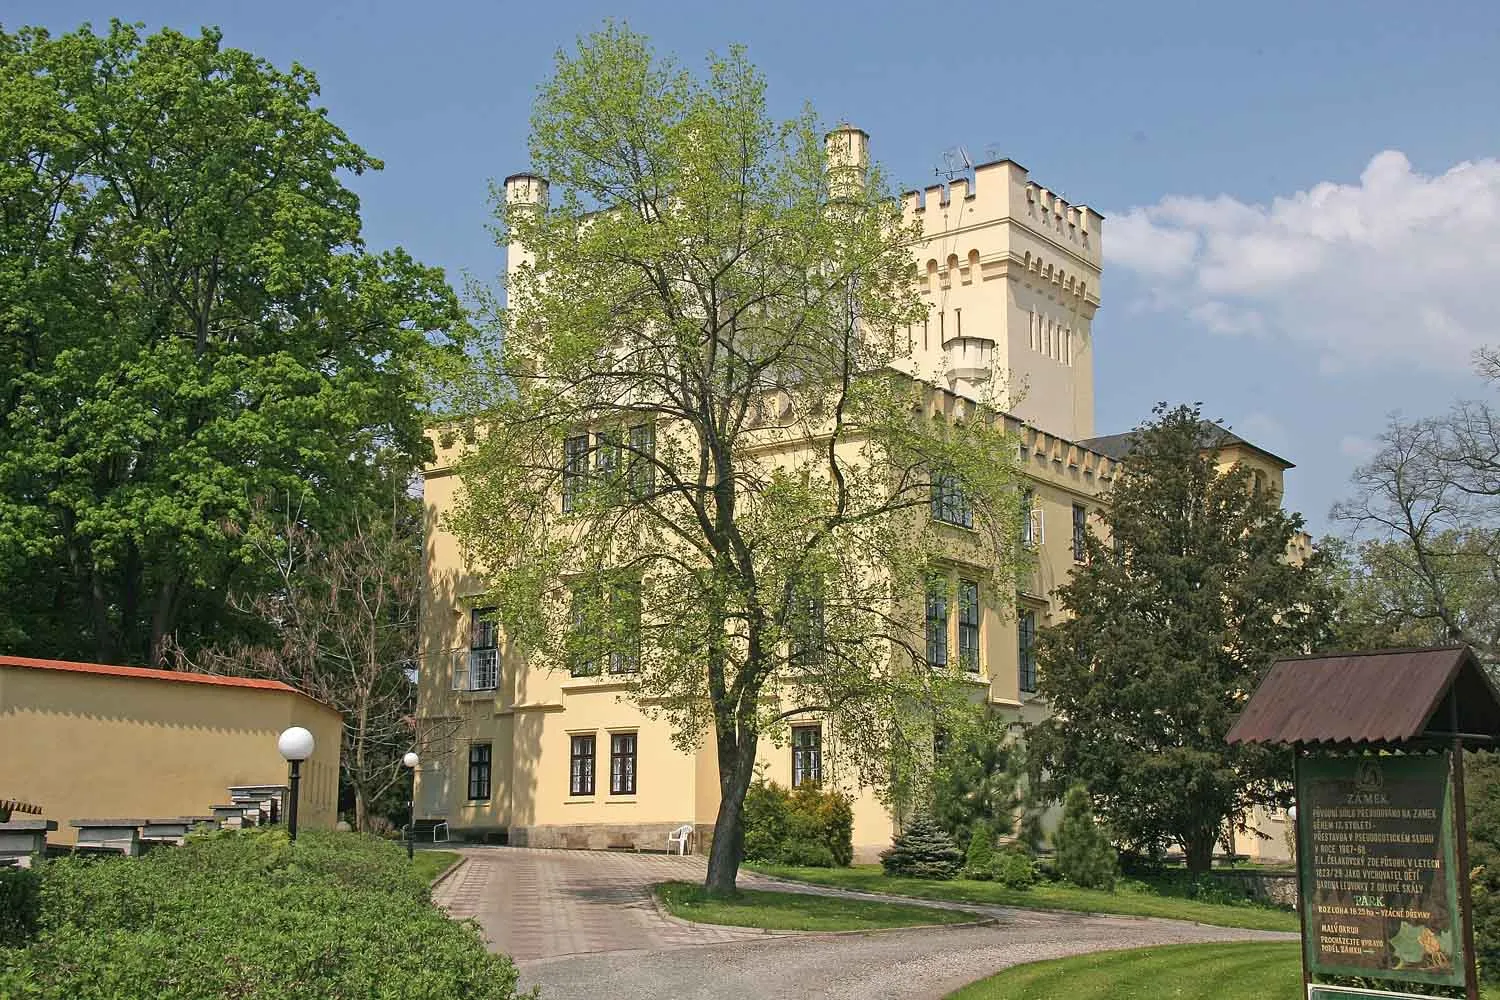 Photo showing: Castle in village Skřivany, district Hradec Králové, Czech Republic
Autor: Prazak

Date: 20. 5. 2006